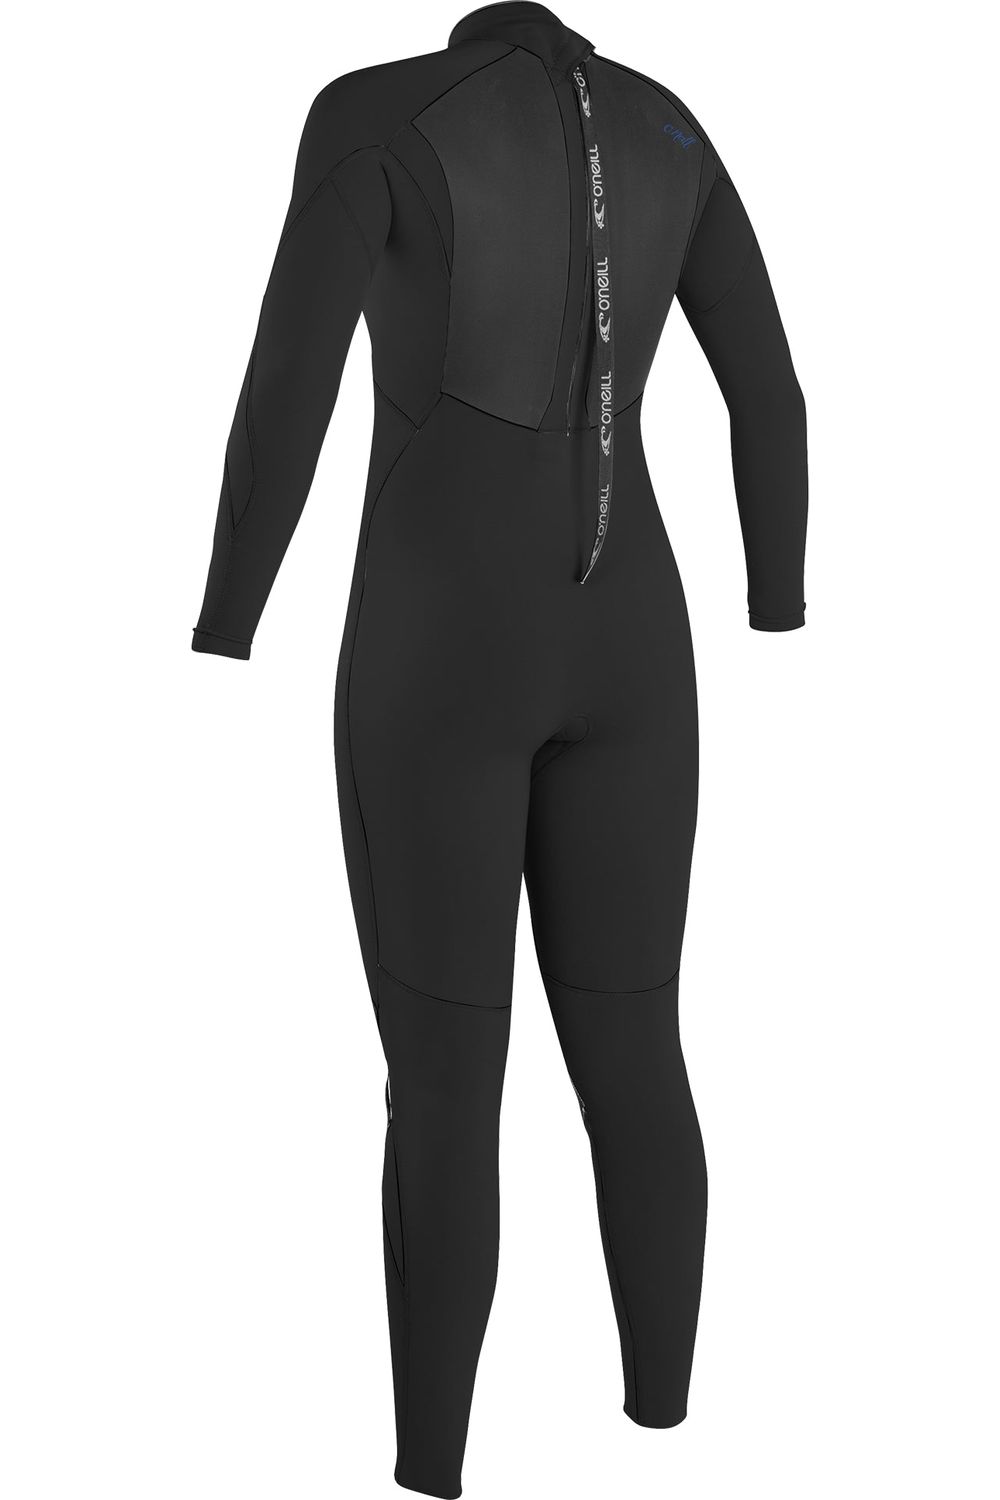 O'Neill Epic Women's Wetsuit 4/3 Back Zip Black